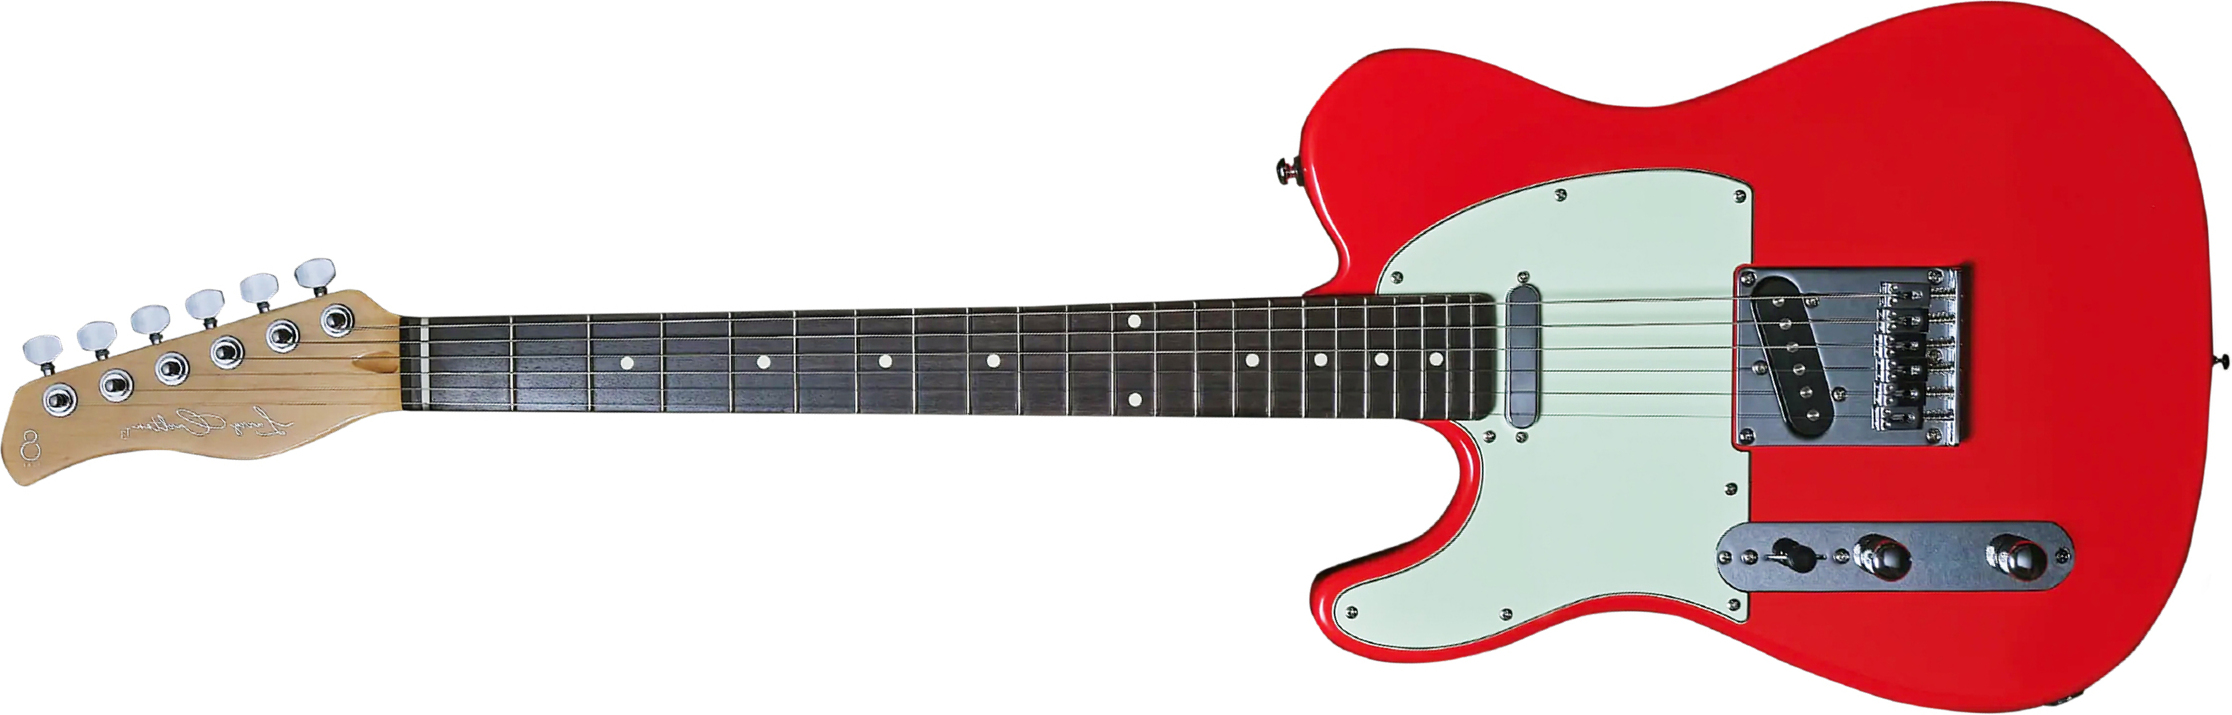 Sire Larry Carlton T3 Lh Signature Gaucher 2s Ht Rw - Dakota Red - Linkshandige elektrische gitaar - Main picture